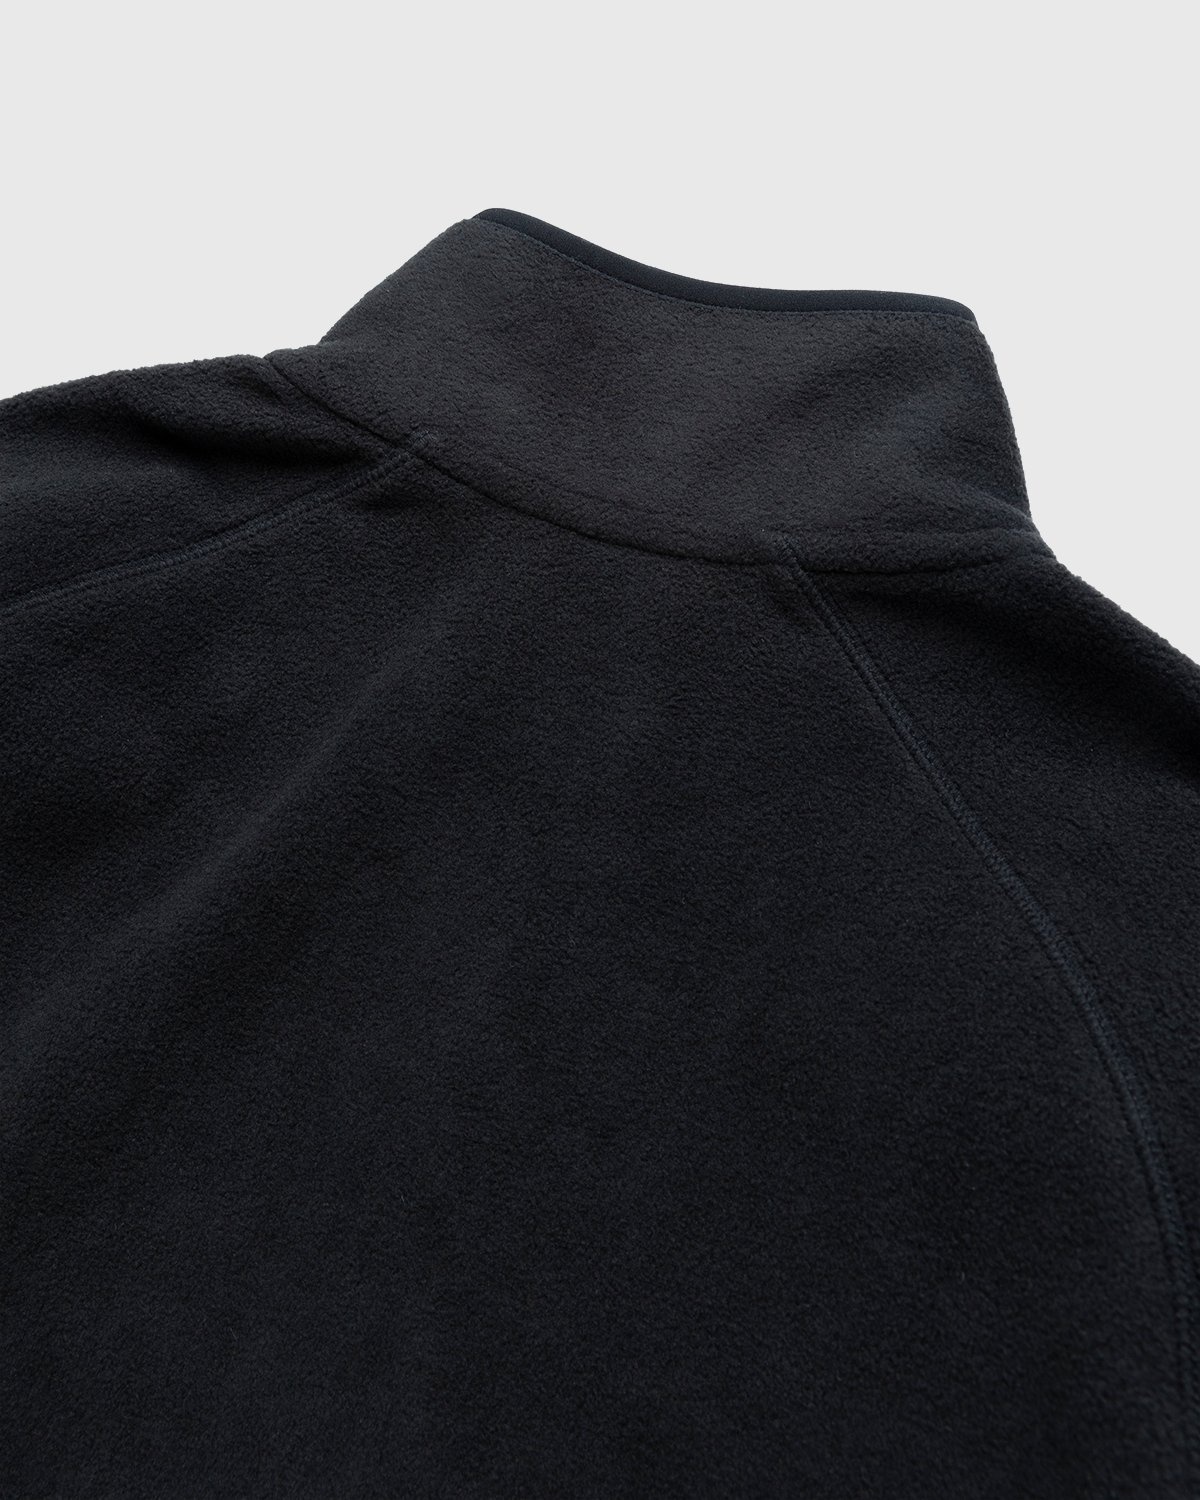 Carhartt WIP – Beaumont Jacket Black - Fleece - Black - Image 4